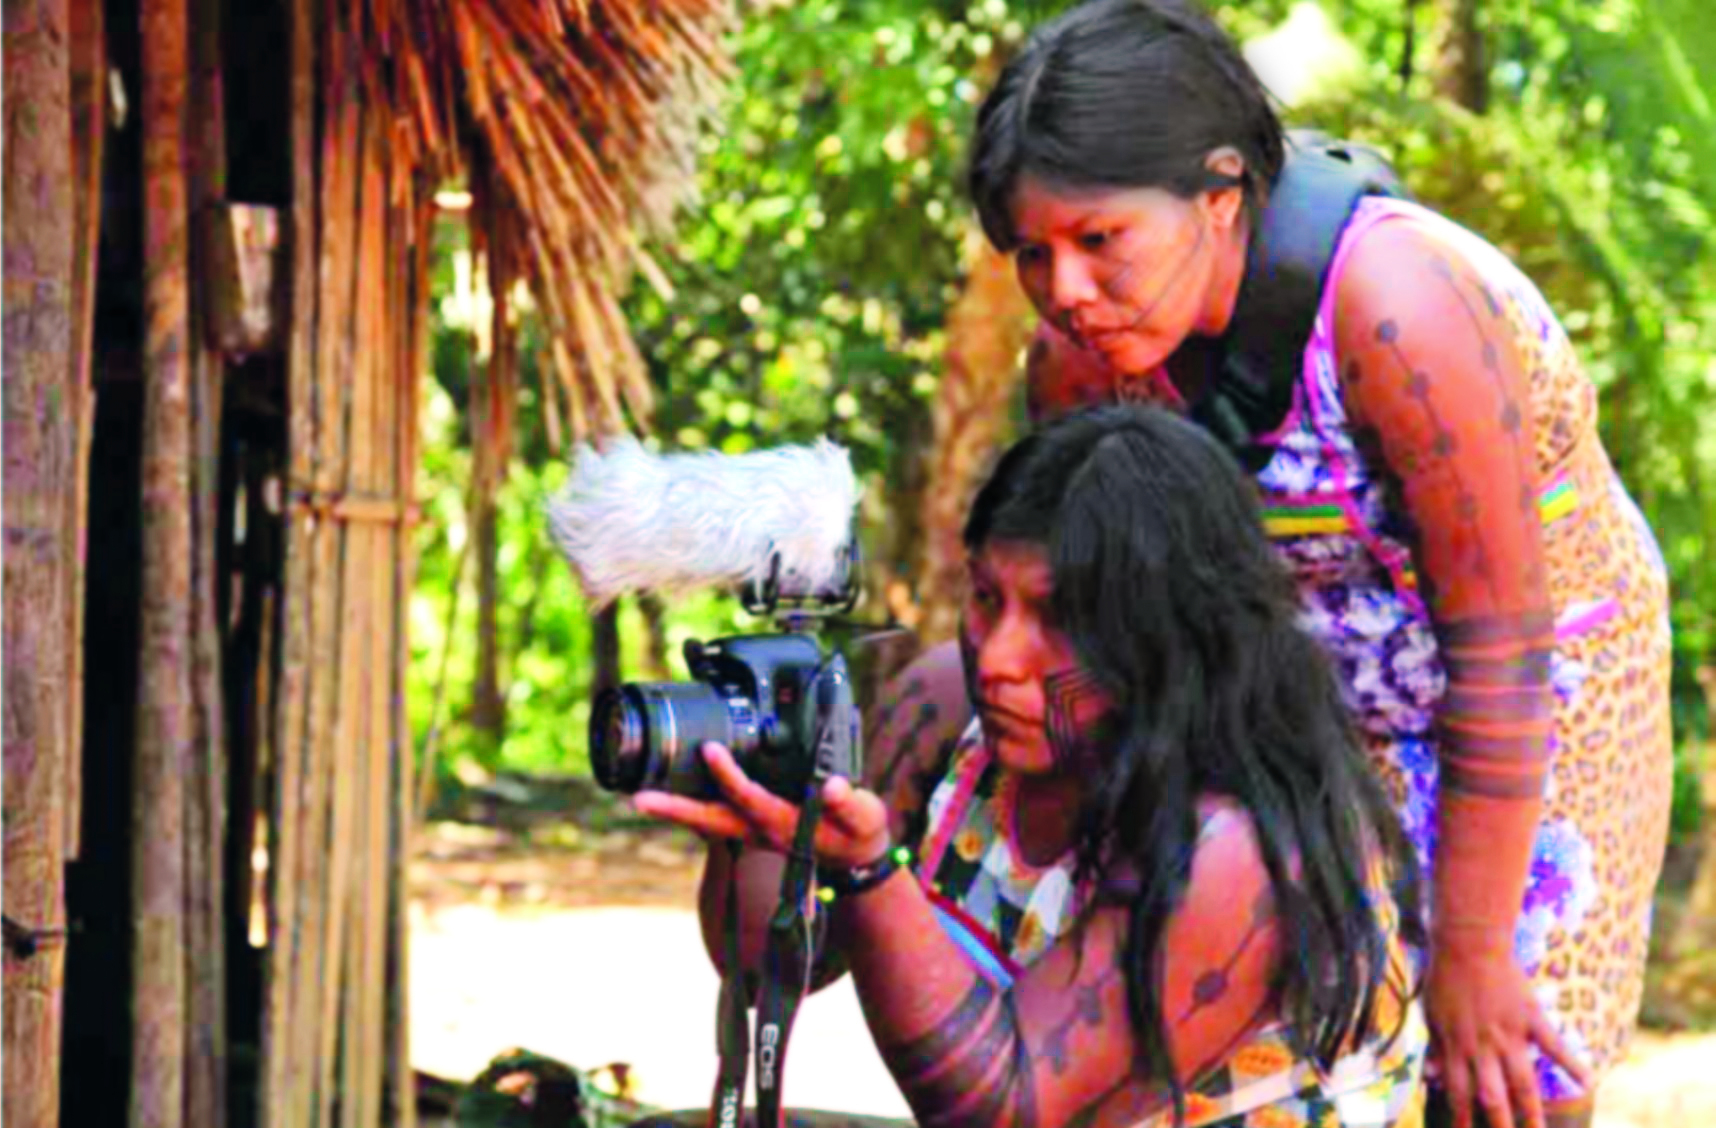 Fotografia. Destaque para duas mulheres indígenas, uma delas em posição mais baixa, segurando uma máquina fotográfica com as mãos. A outra, por detrás, tem o olhar voltado para o objeto. Ambas têm longos cabelos lisos e escuros e usam vestidos coloridos e pinturas corporais